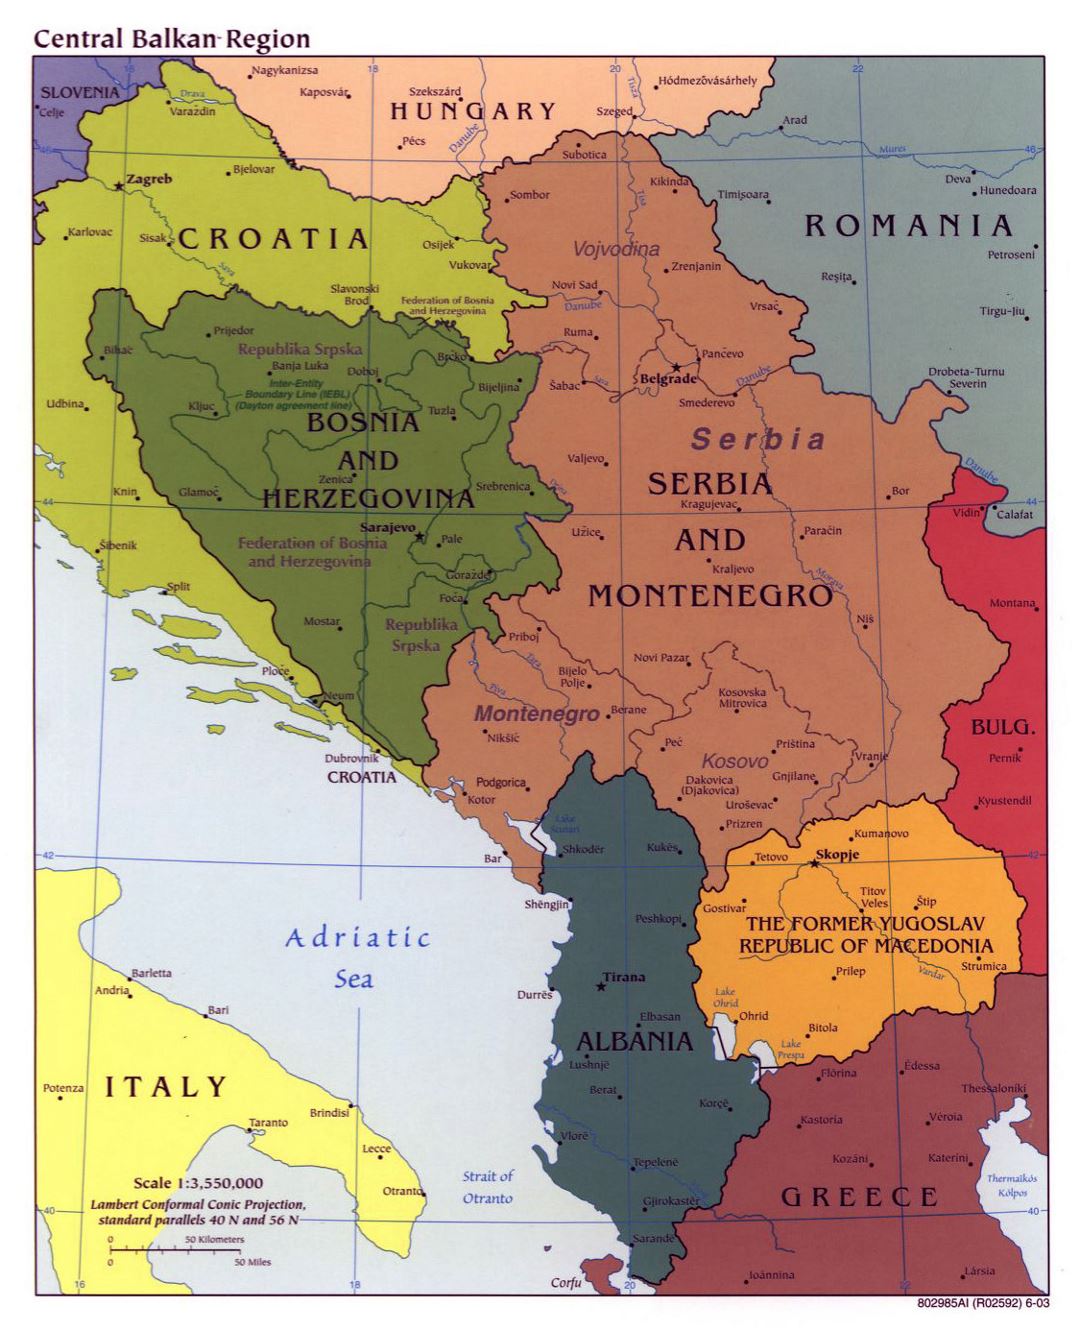 Mapa político grande de la Región Central de los Balcanes con las principales ciudades - 2003